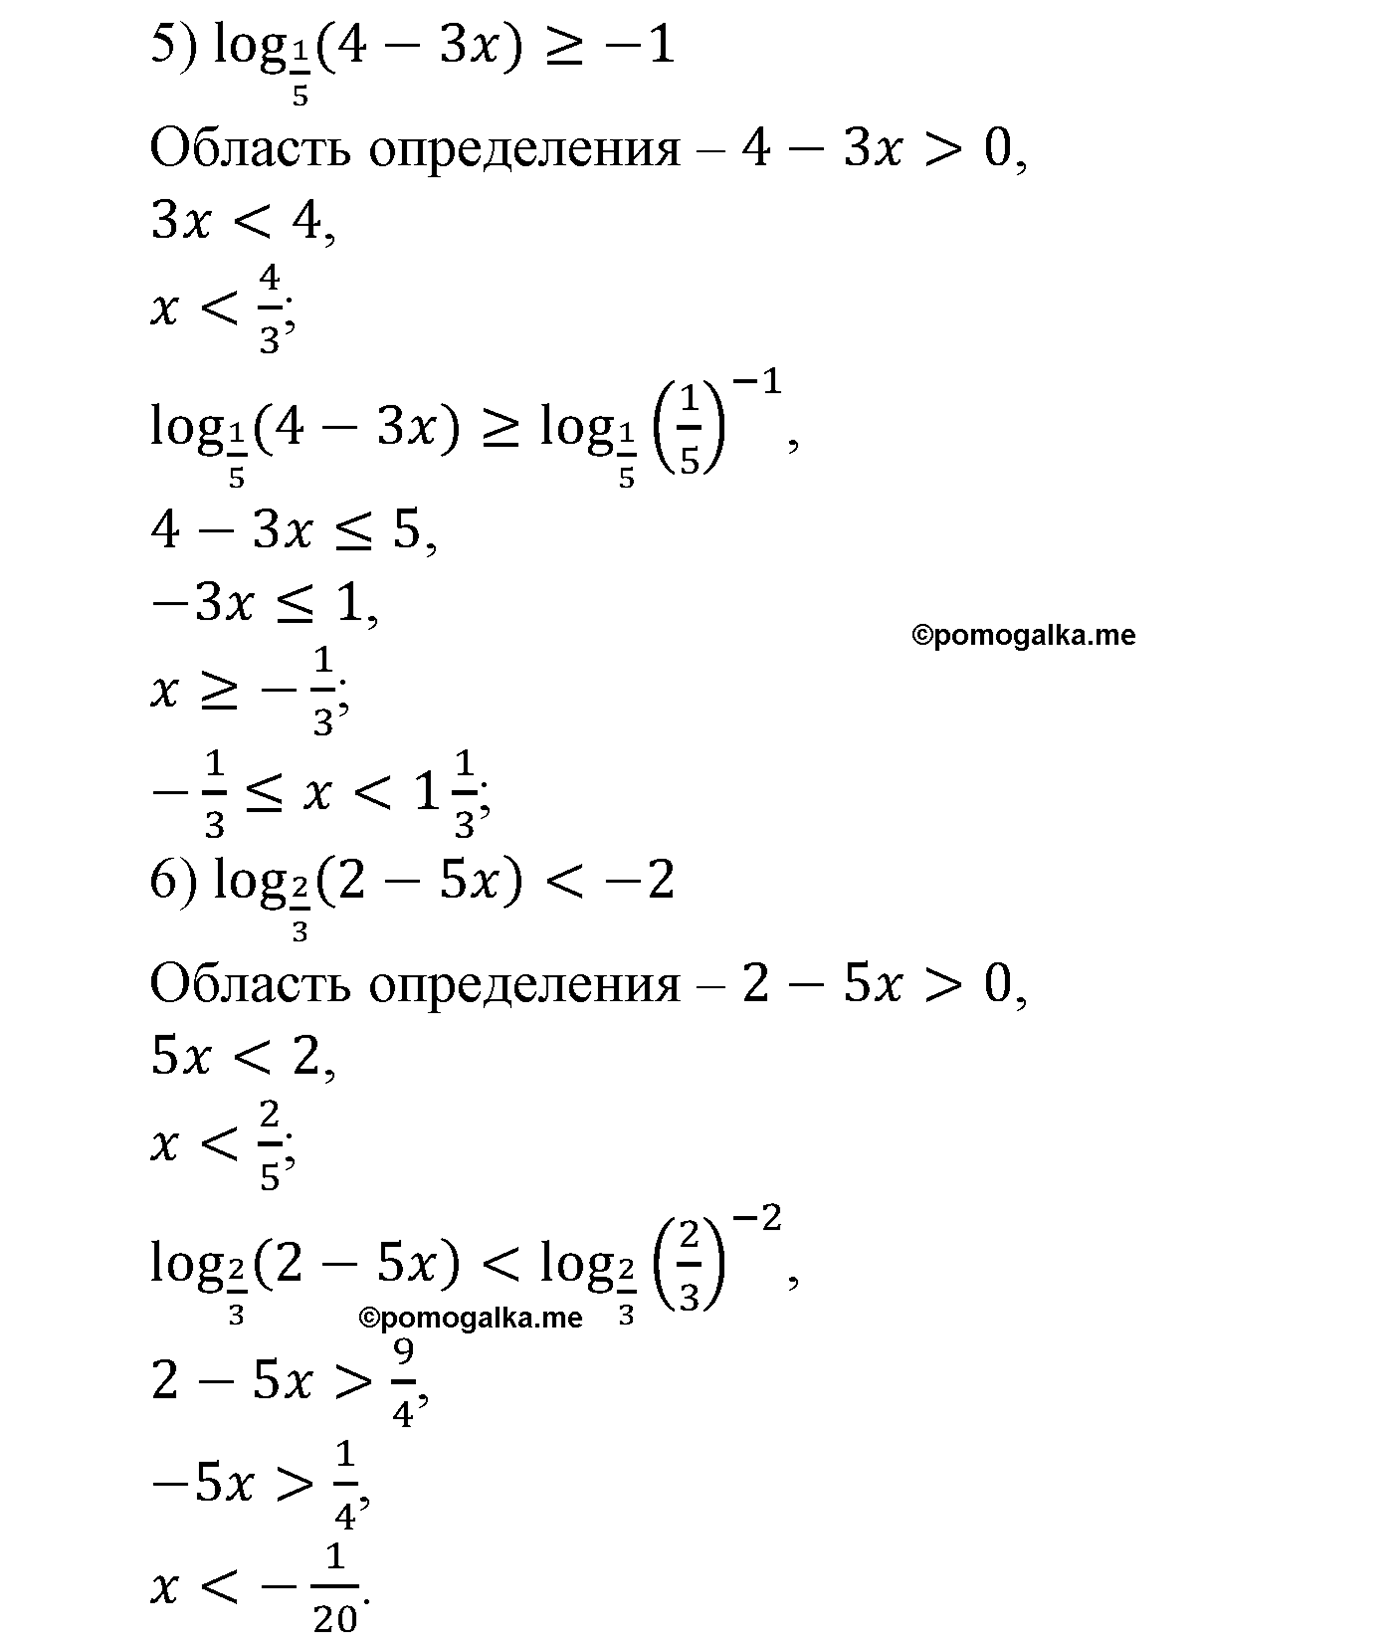 разбор задачи №355 по алгебре за 10-11 класс из учебника Алимова, Колягина